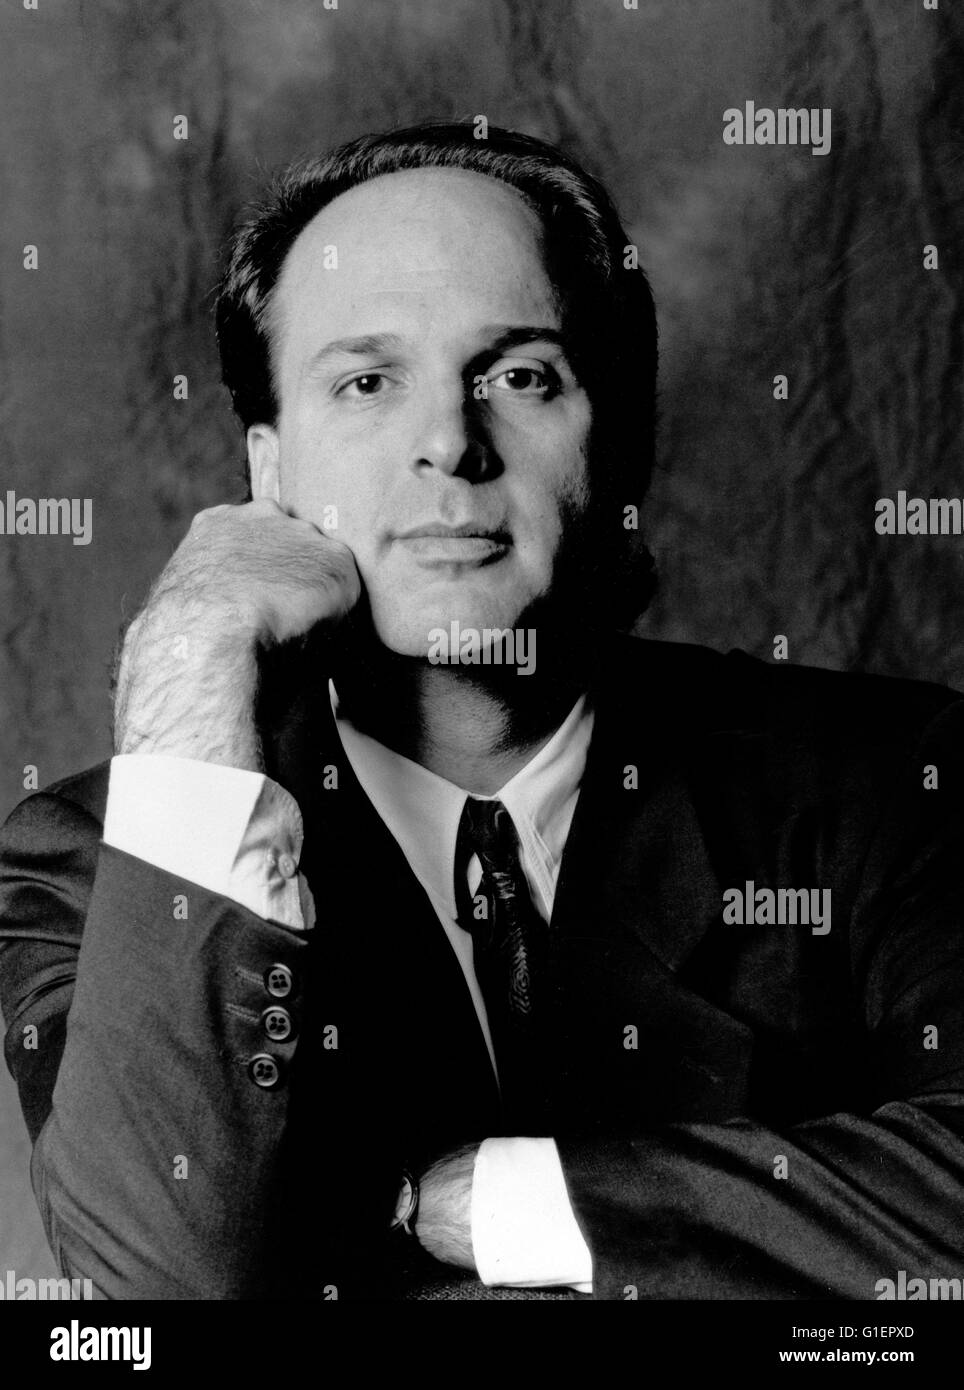 Musiksender MTV: Presidente Business Director Peter Einstein, 1990er Jahre Foto Stock